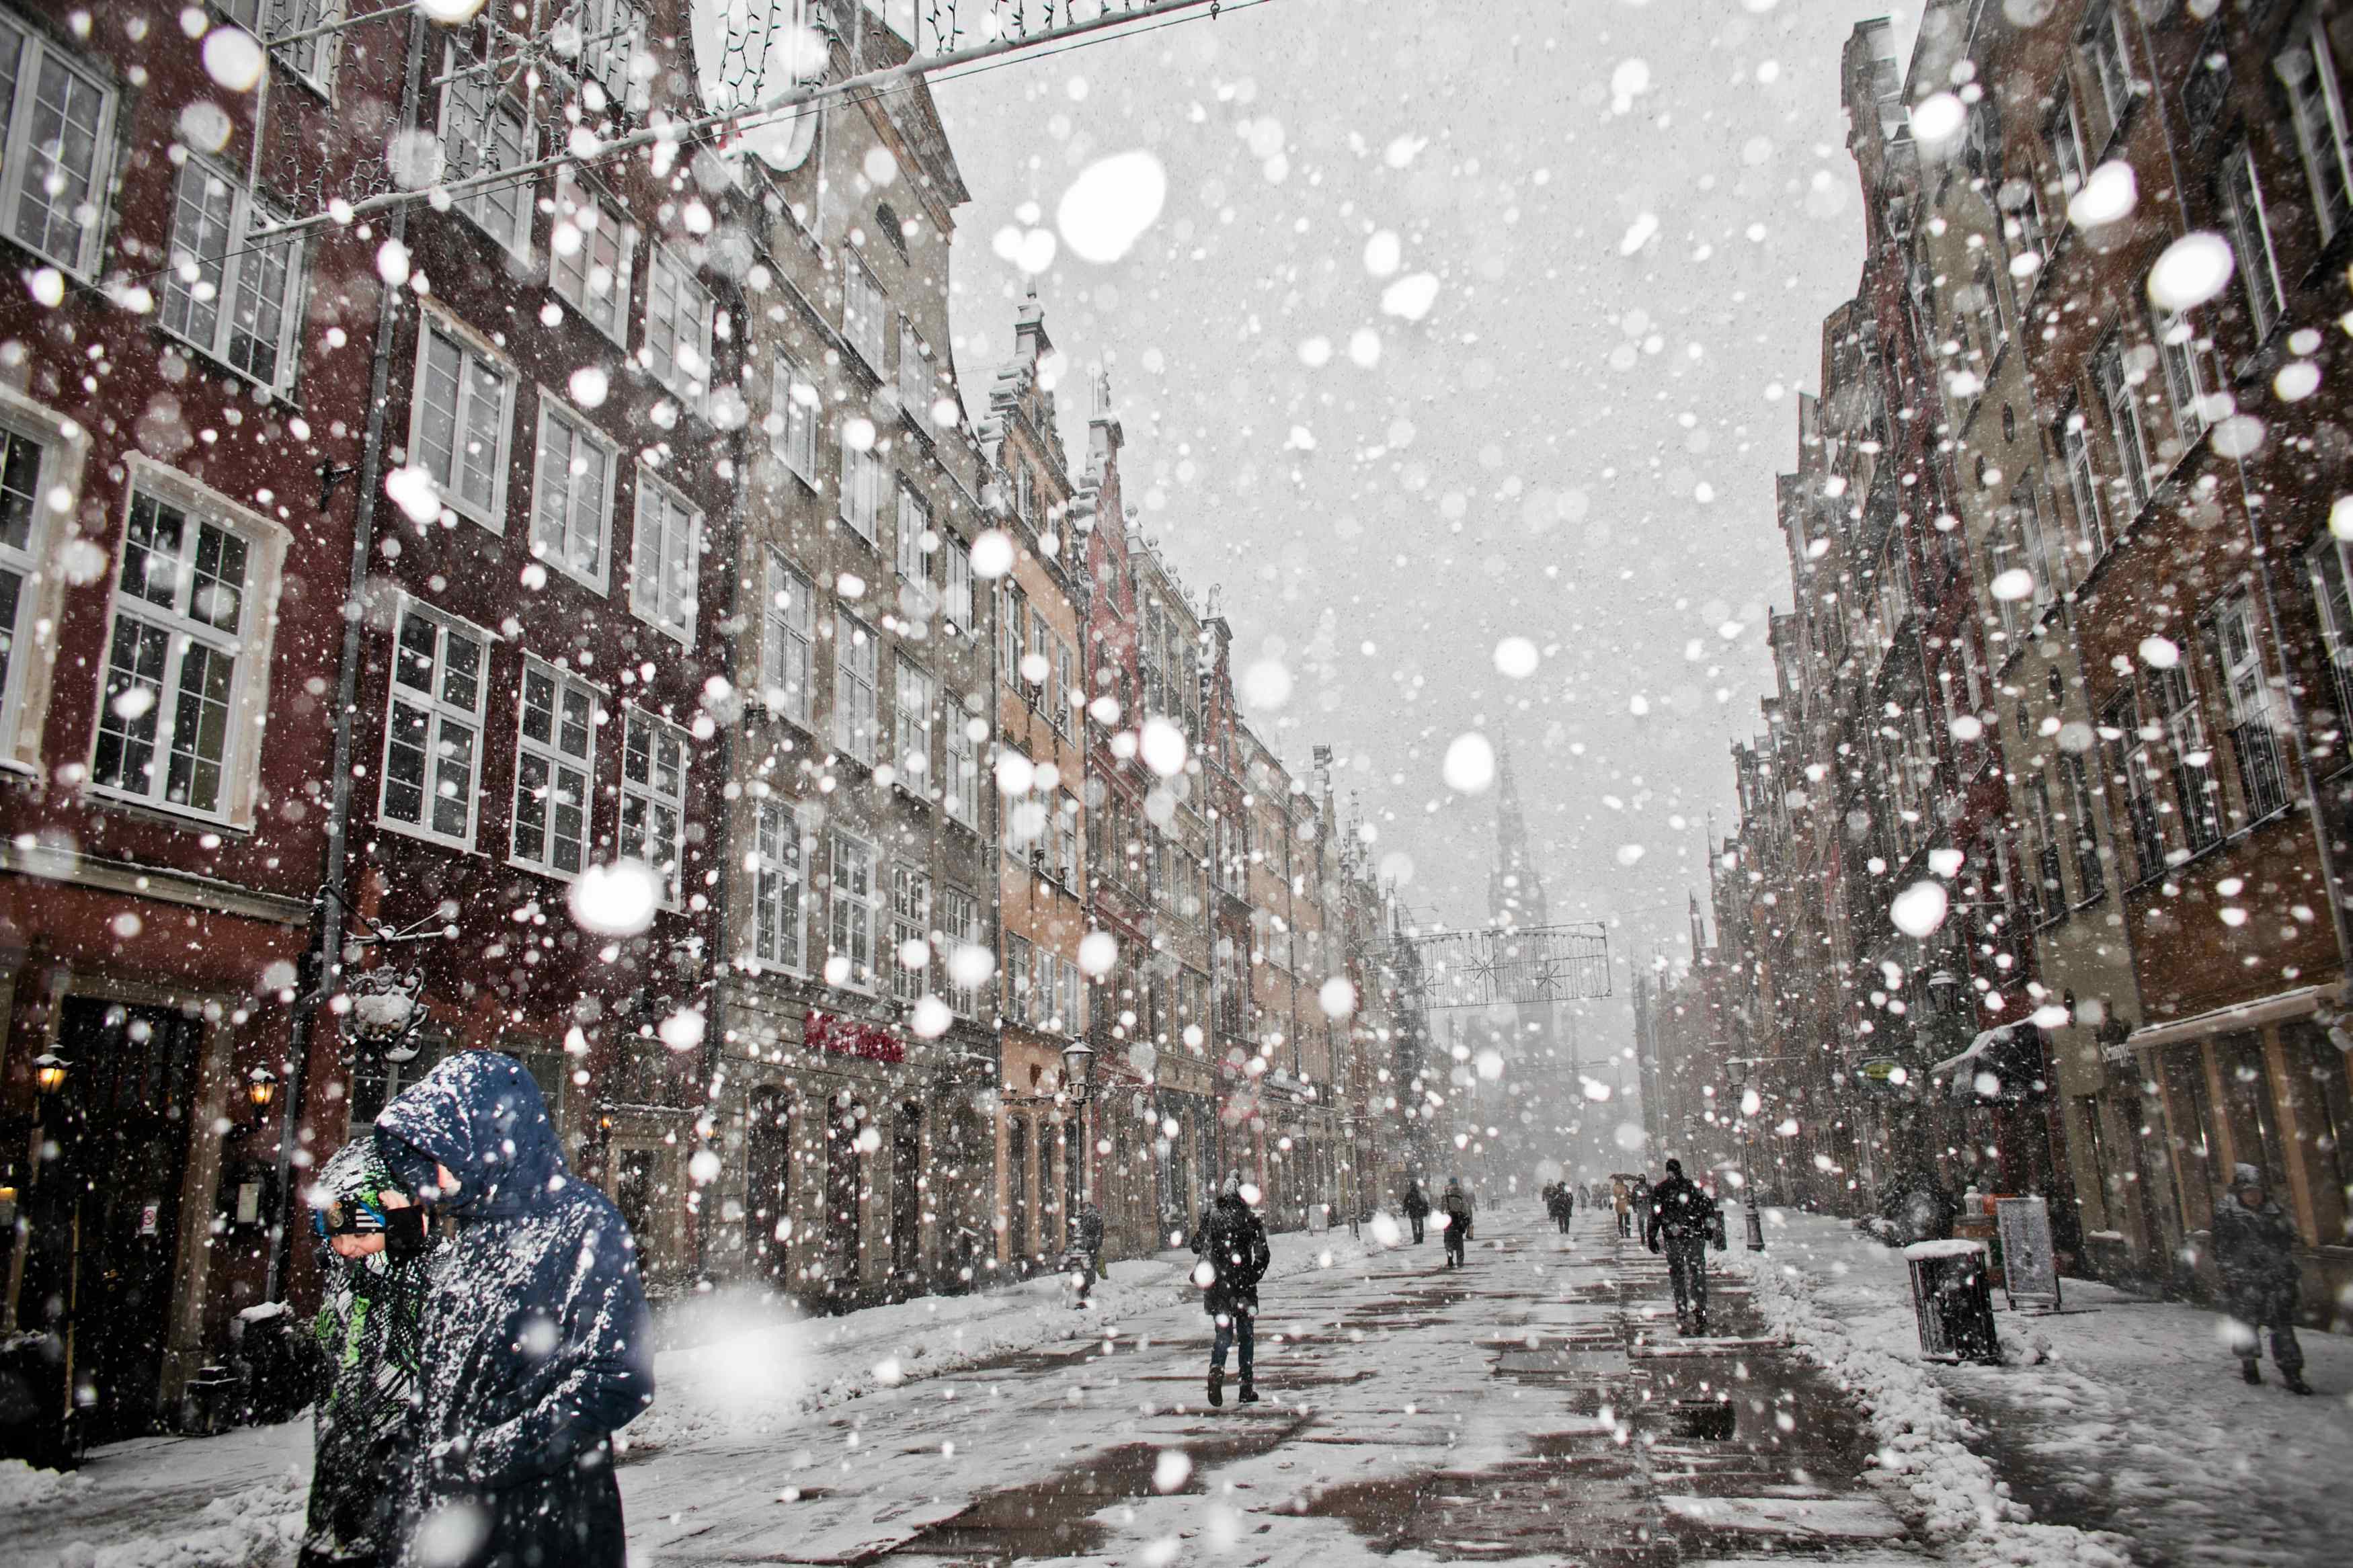 Снег падает крупными хлопьями. Снегопад. Снег в городе. Снегопад в городе. Падает снег в городе.